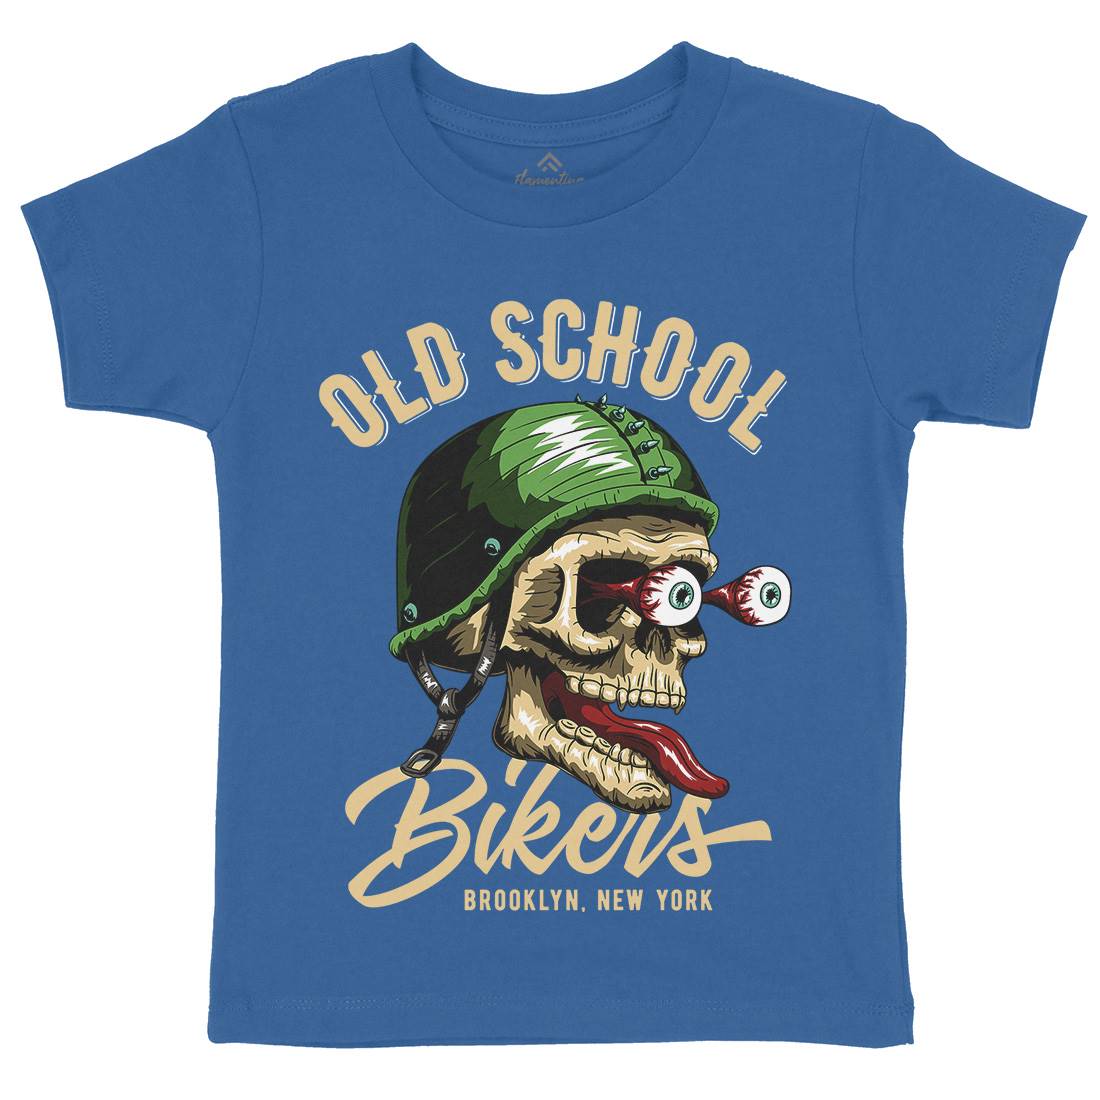 Oldschool Biker Kids Organic Crew Neck T-Shirt Motorcycles C812